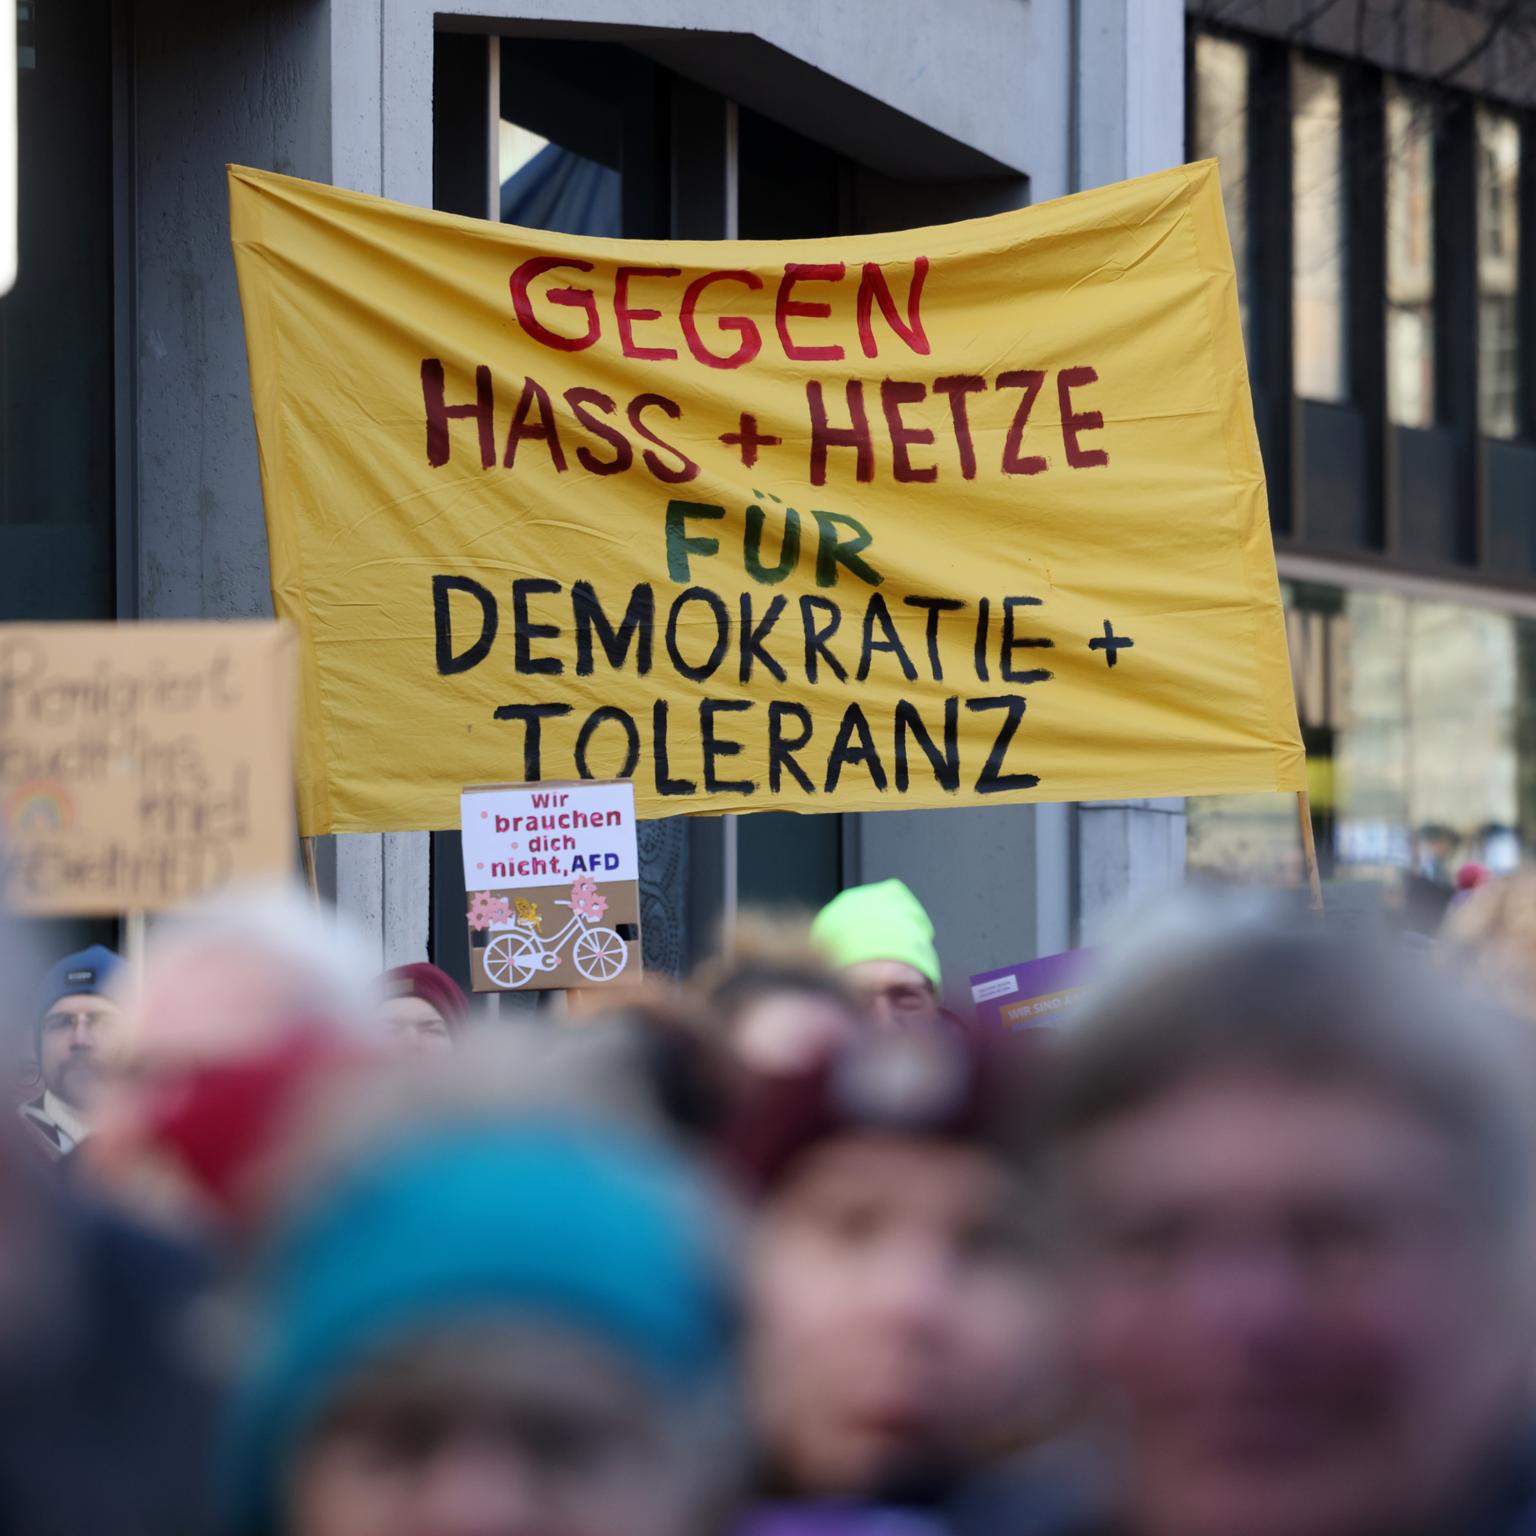 Demokratische Mehrheitssuche statt Radikalisierung (c) Bistum Aachen / Andreas Steindl